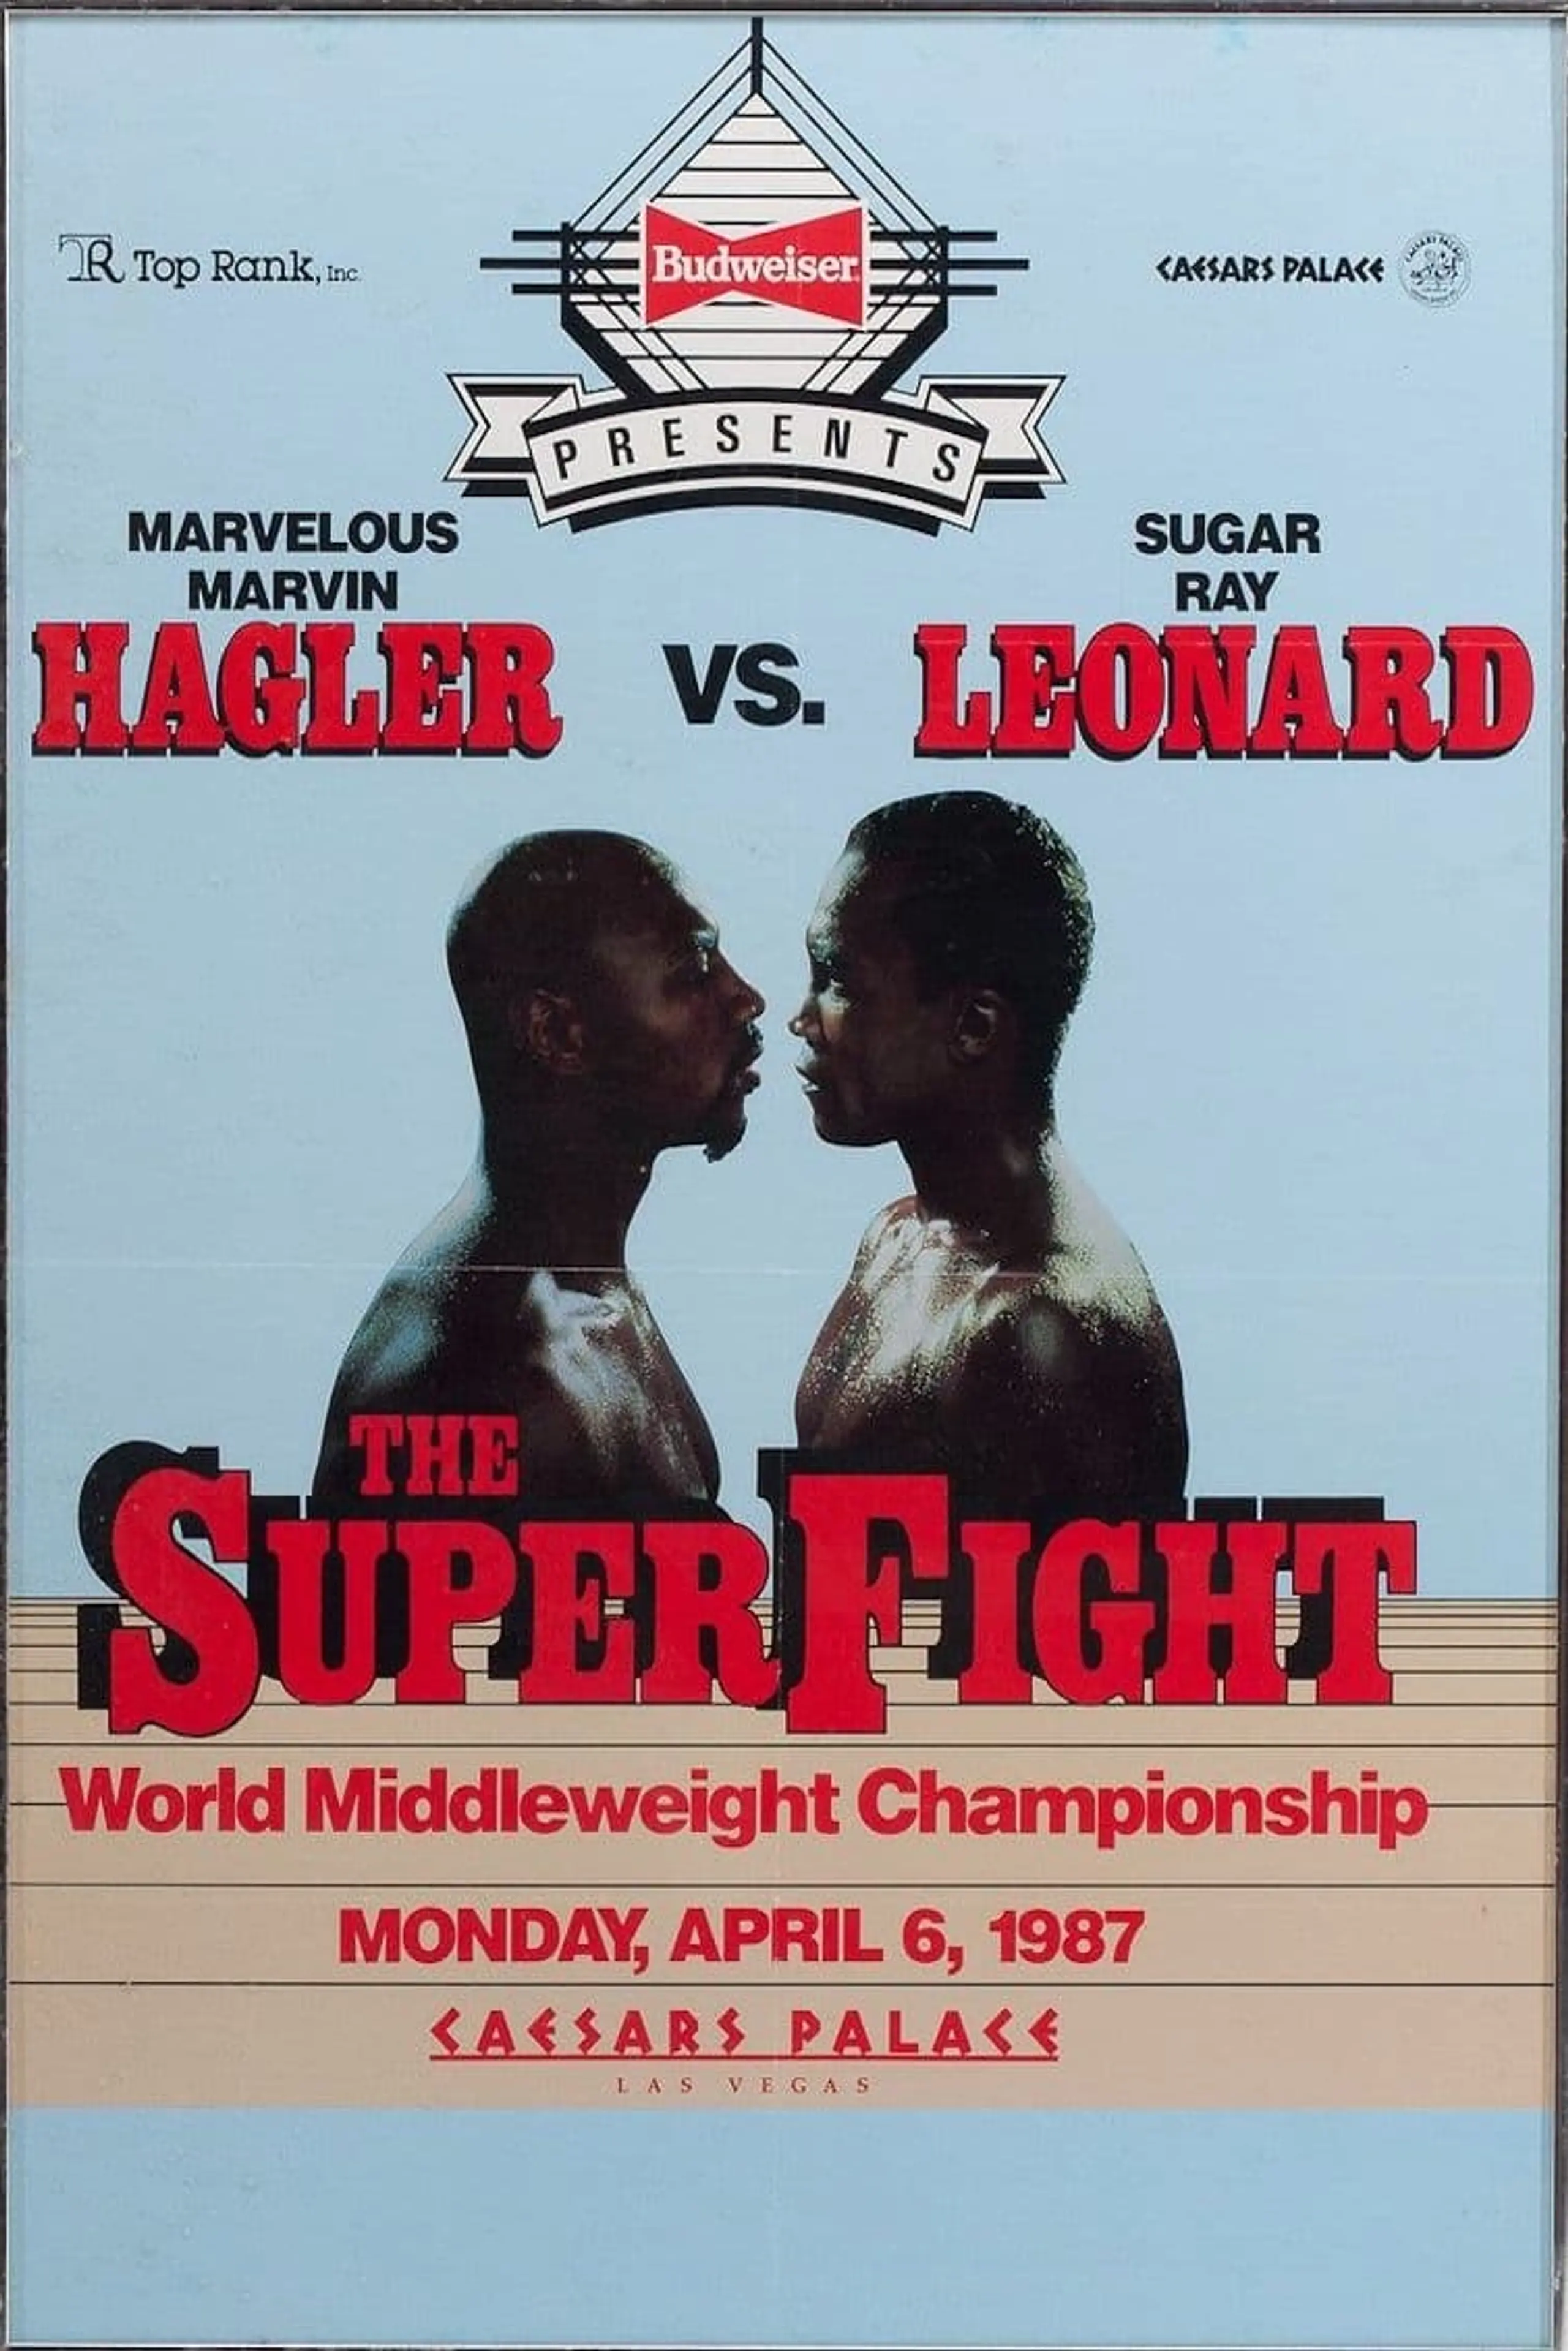 Marvelous Marvin Hagler vs Sugar Ray Leonard